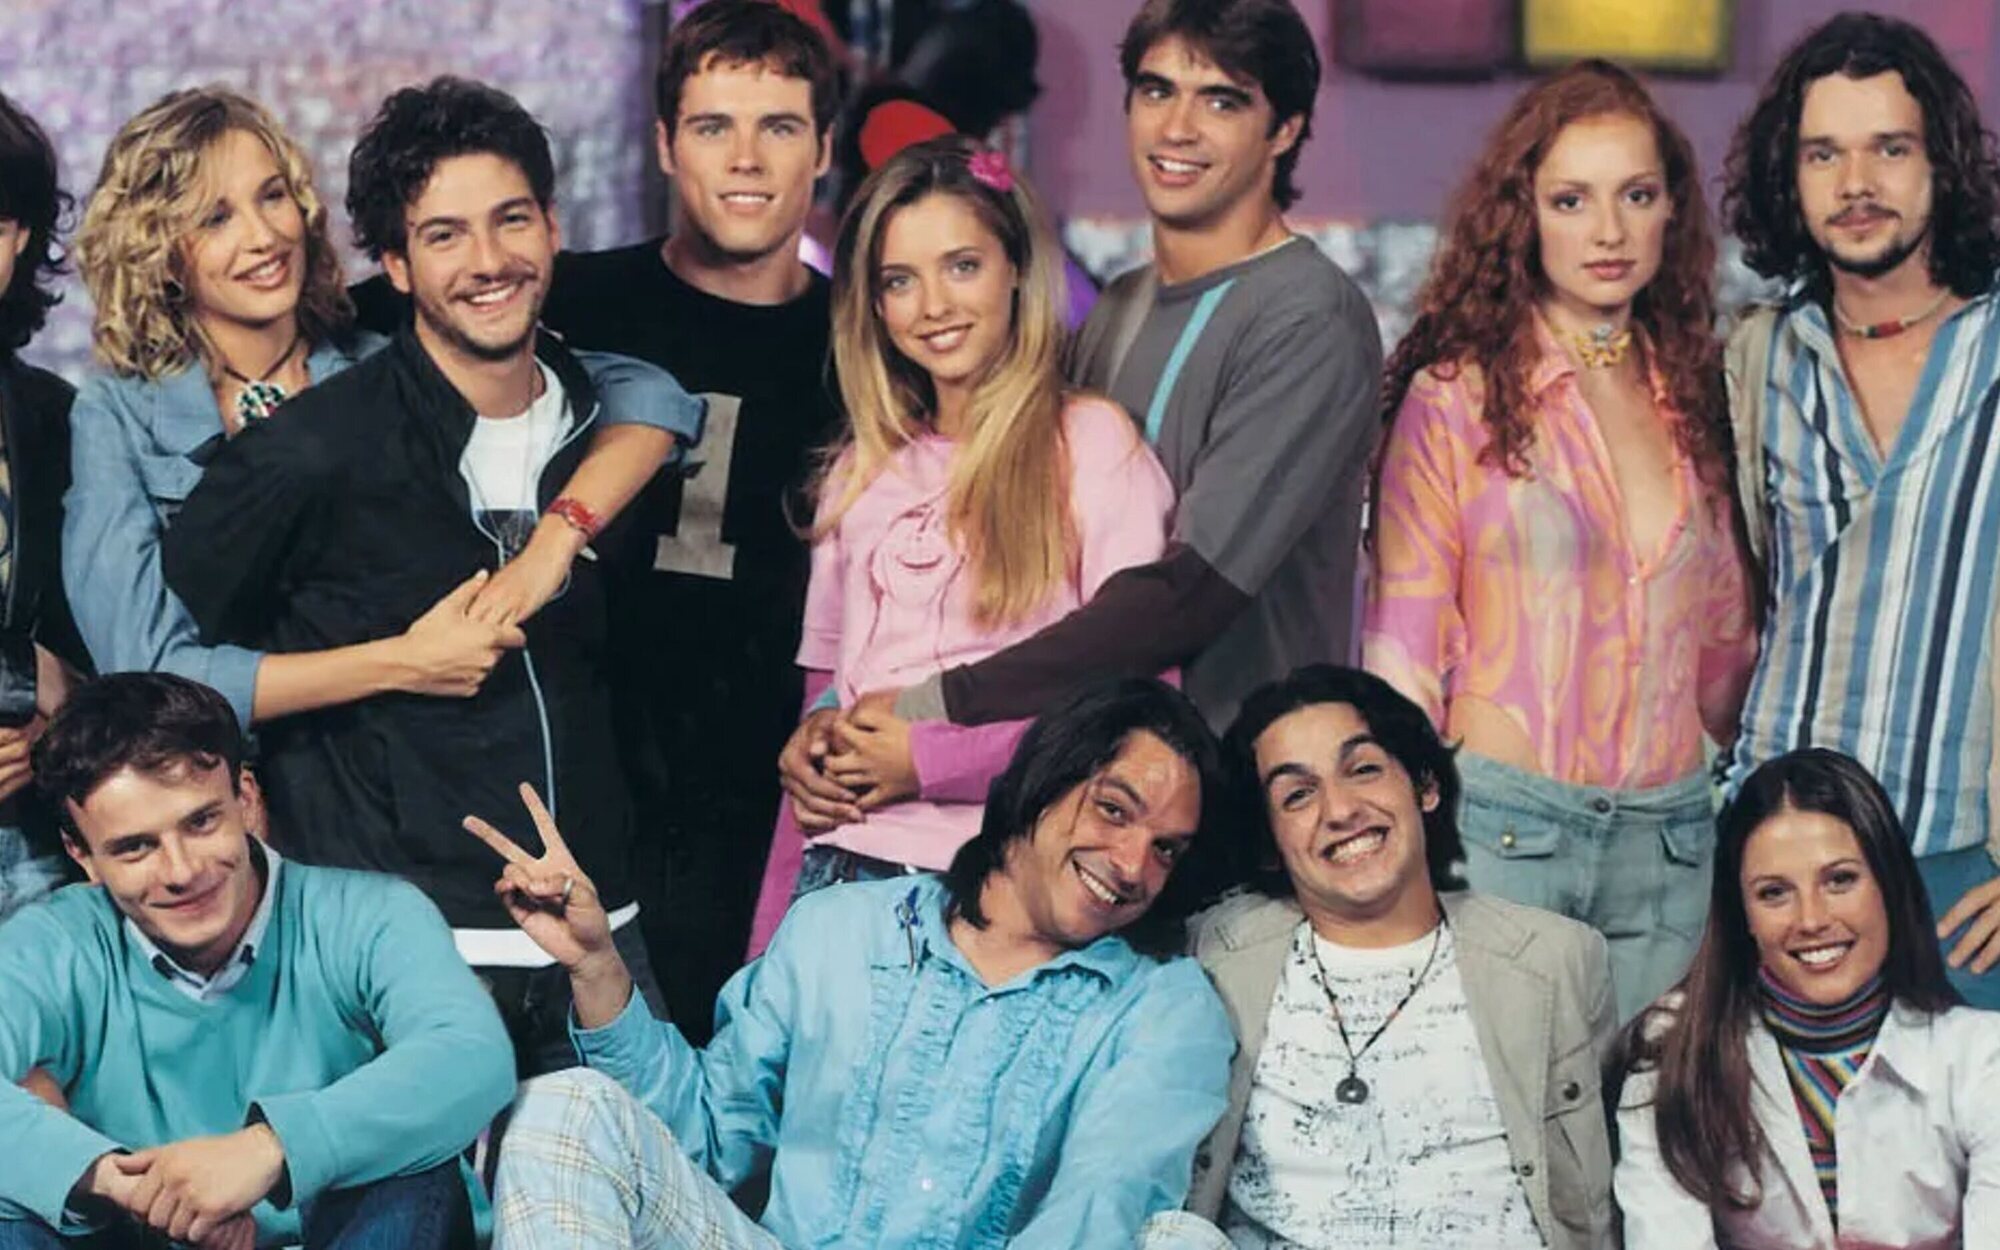 El reparto de 'Al salir de clase' se reencuentra 20 años después con una quedada organizada por Dani Martínez